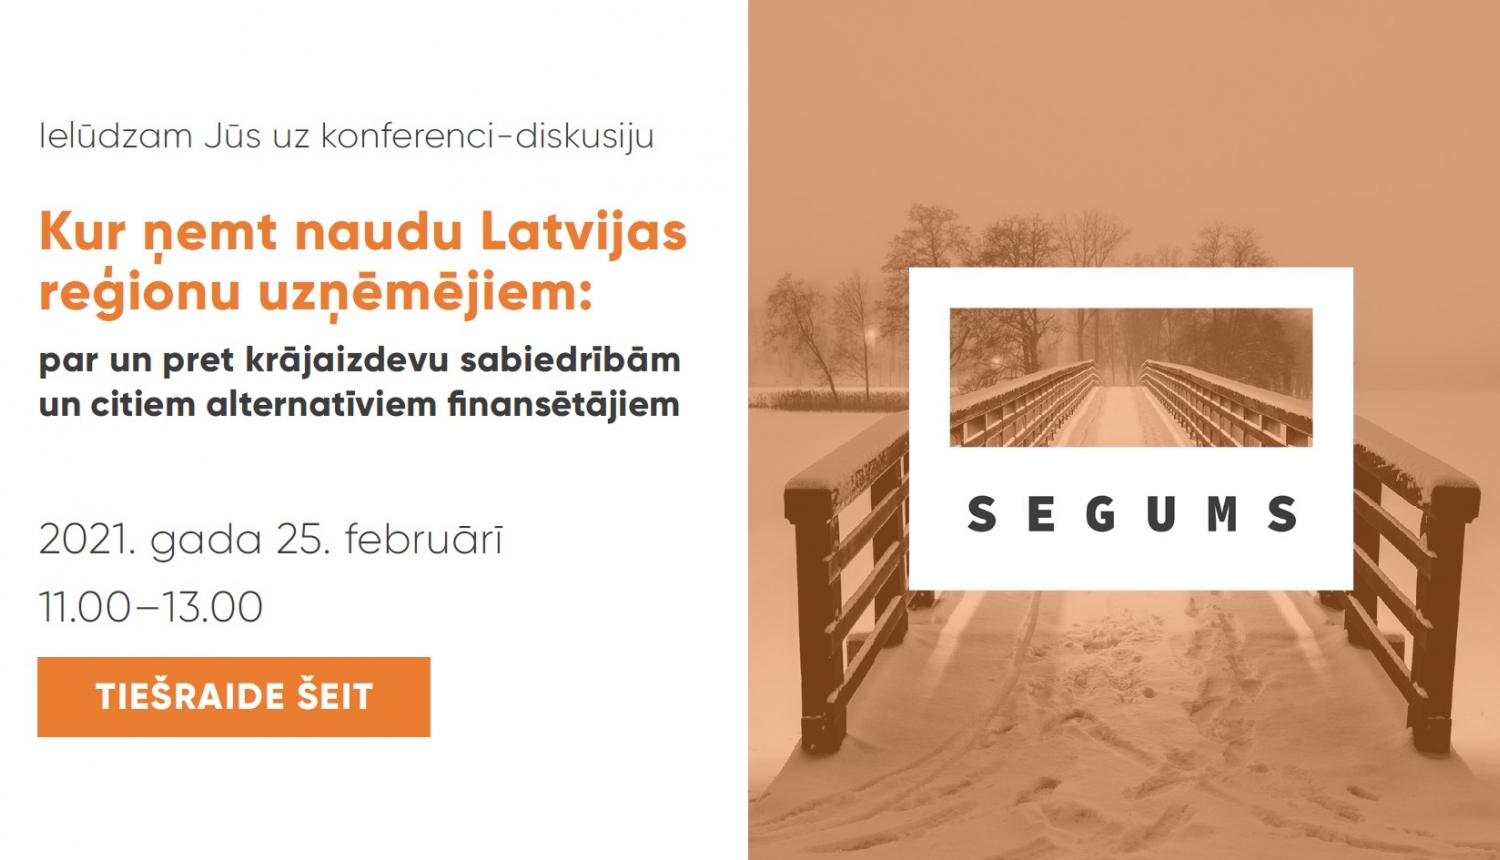 Diskusija: Kur ņemt naudu Latvijas reģionu uzņēmējiem: par un pret kooperatīvām krājaizdevu sabiedrībām un citiem alternatīviem finansētājiem